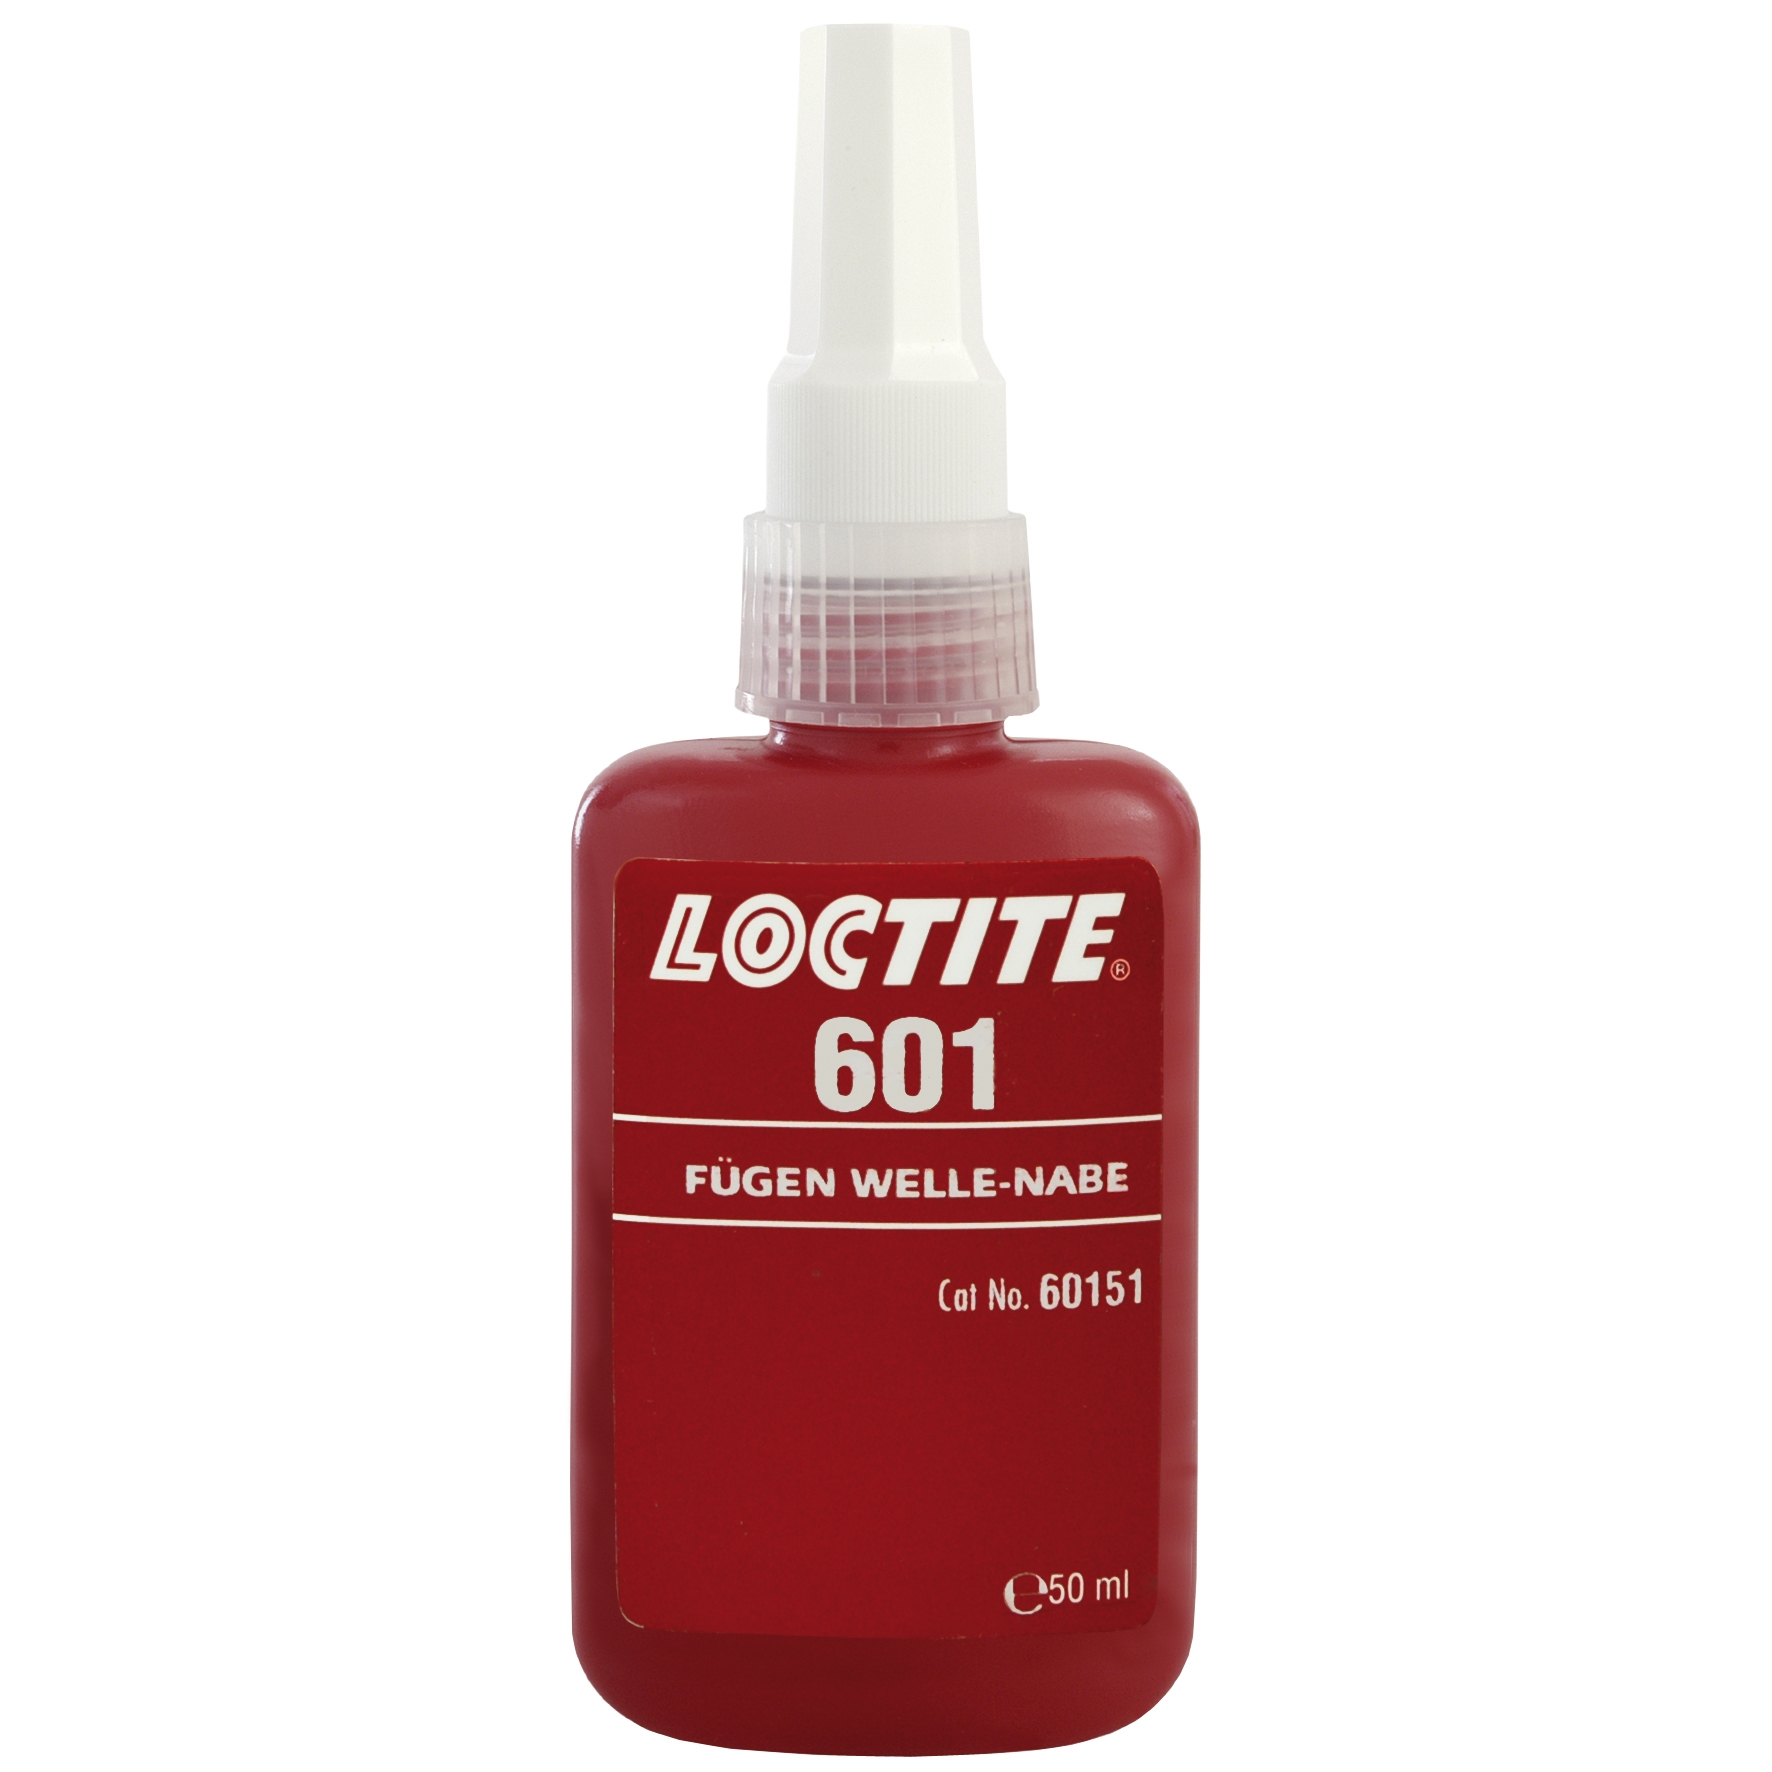 Loctite 601 Fügeverbindung, hochfest, 10 ml, # 60111